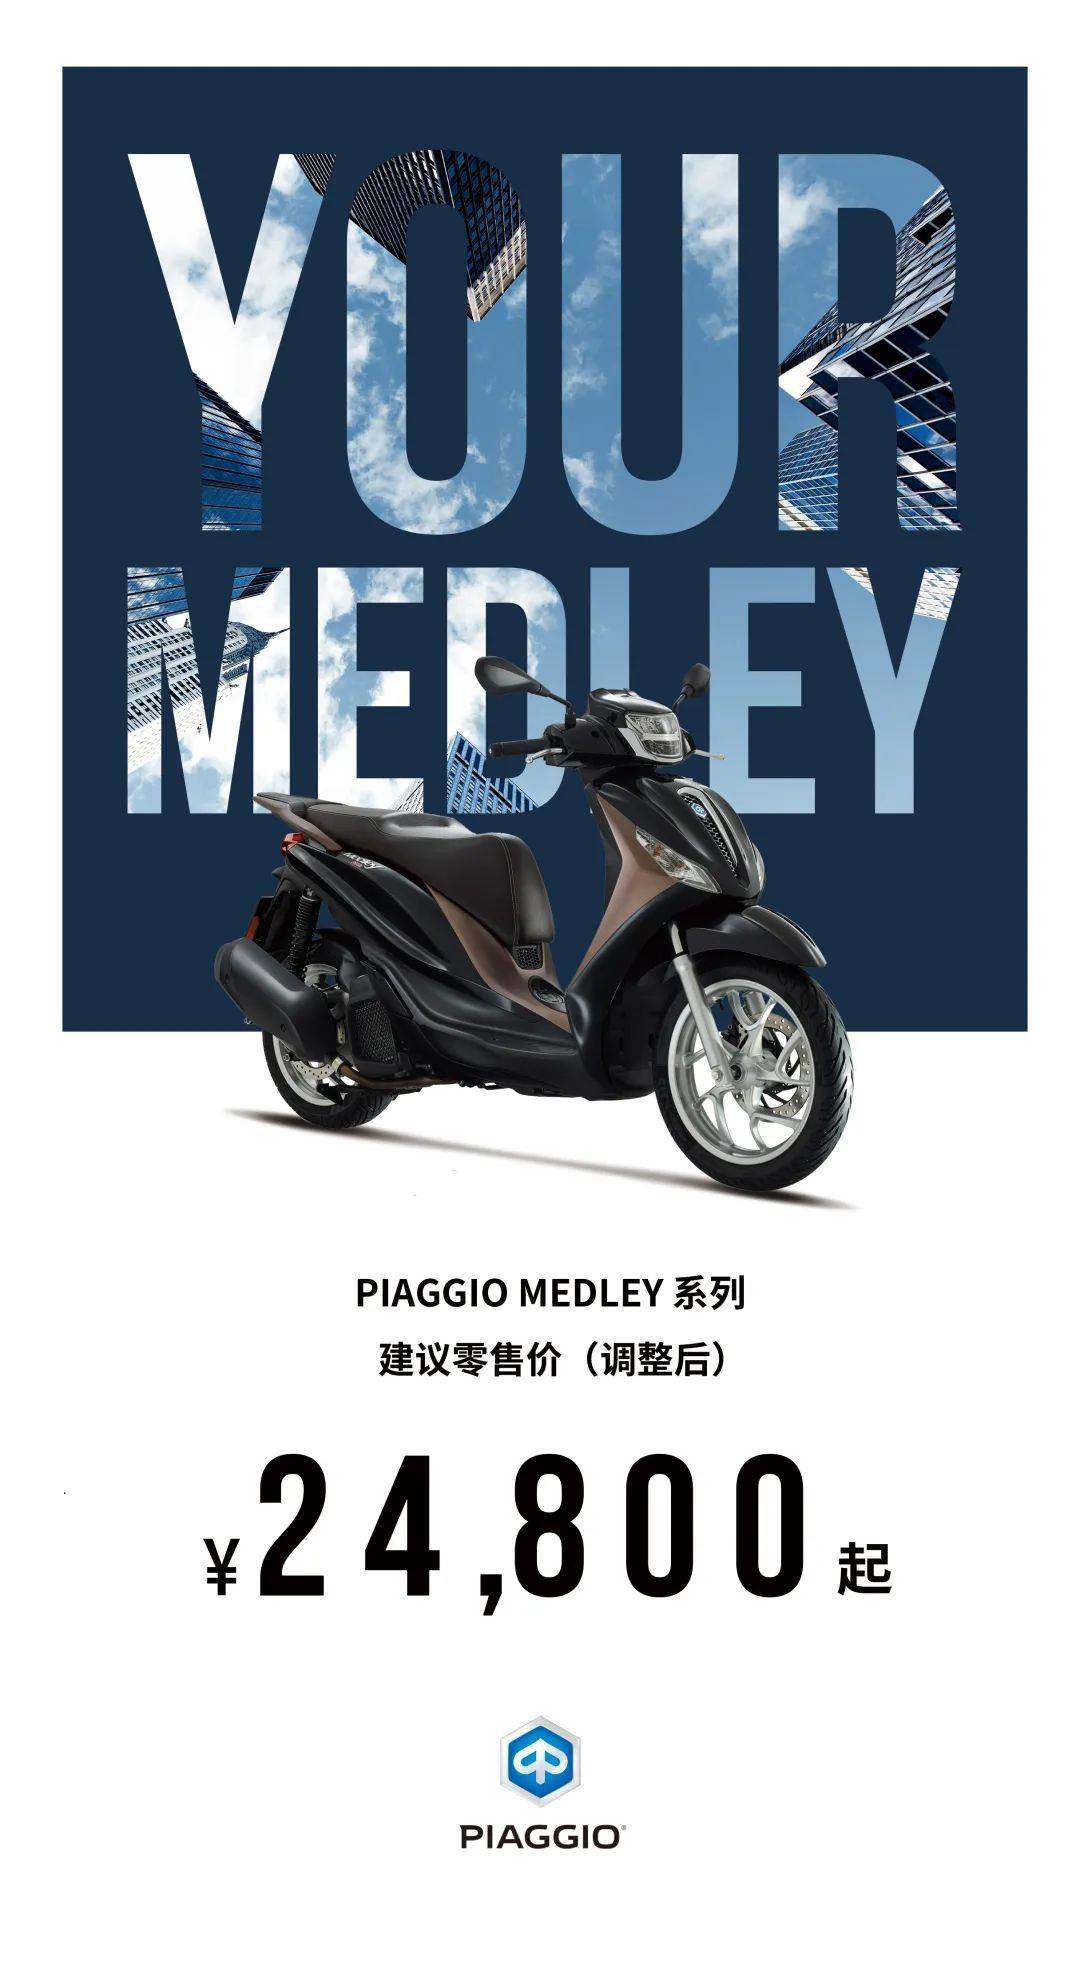 元气骑士1.6苹果版:PIAGGIO MEDLEY钜惠4000元，调整后售价24800元起，即刻向自由通勤出发